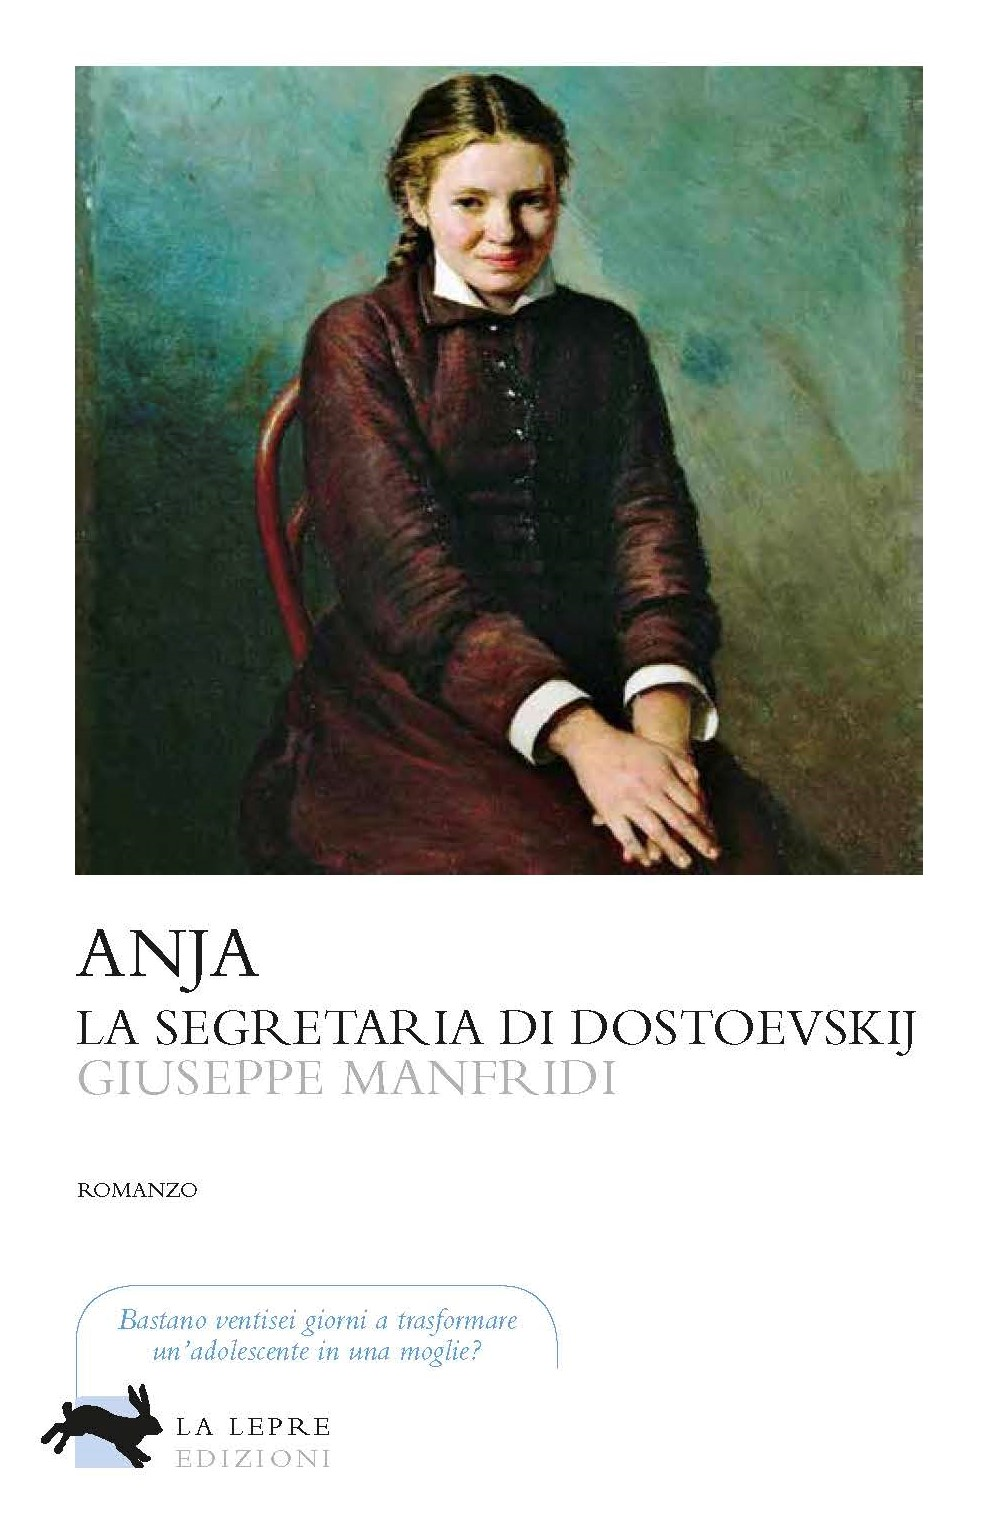 ‘Anja, la segretaria di Dostojevskij’ di Giuseppe Manfridi sarà presentato a Roma il 17 novembre prossimo